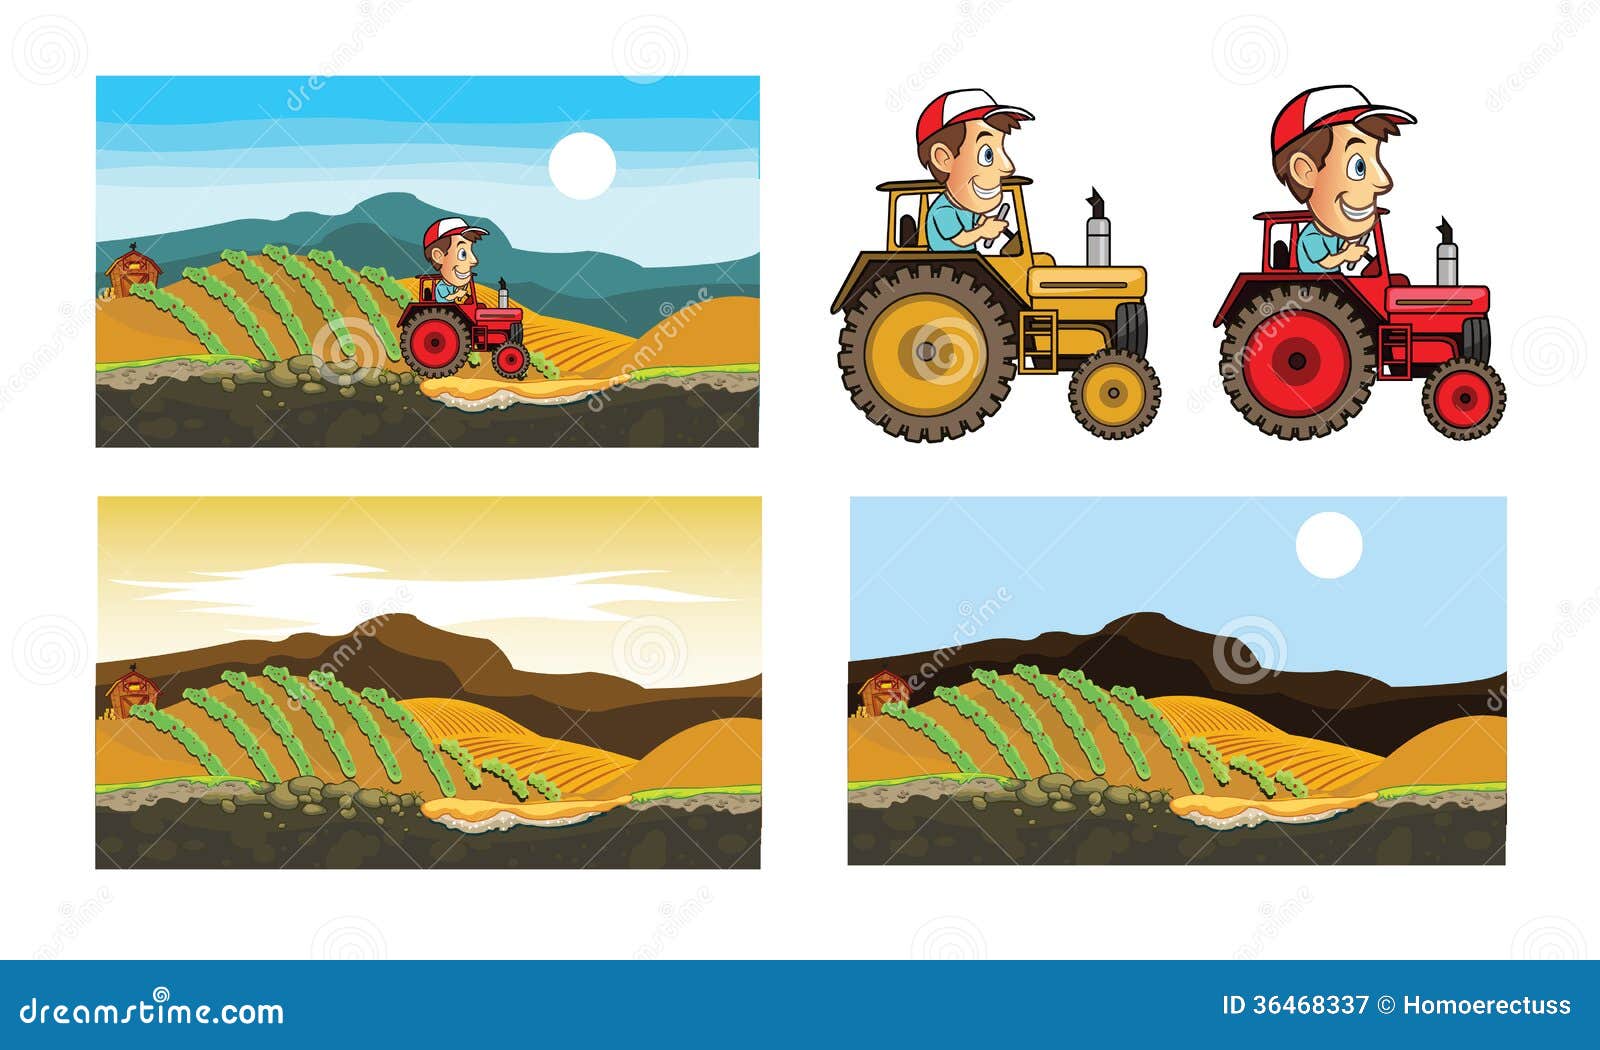 Tractor and Farmer Cartoon stock illustration. Illustration of field -  36468337